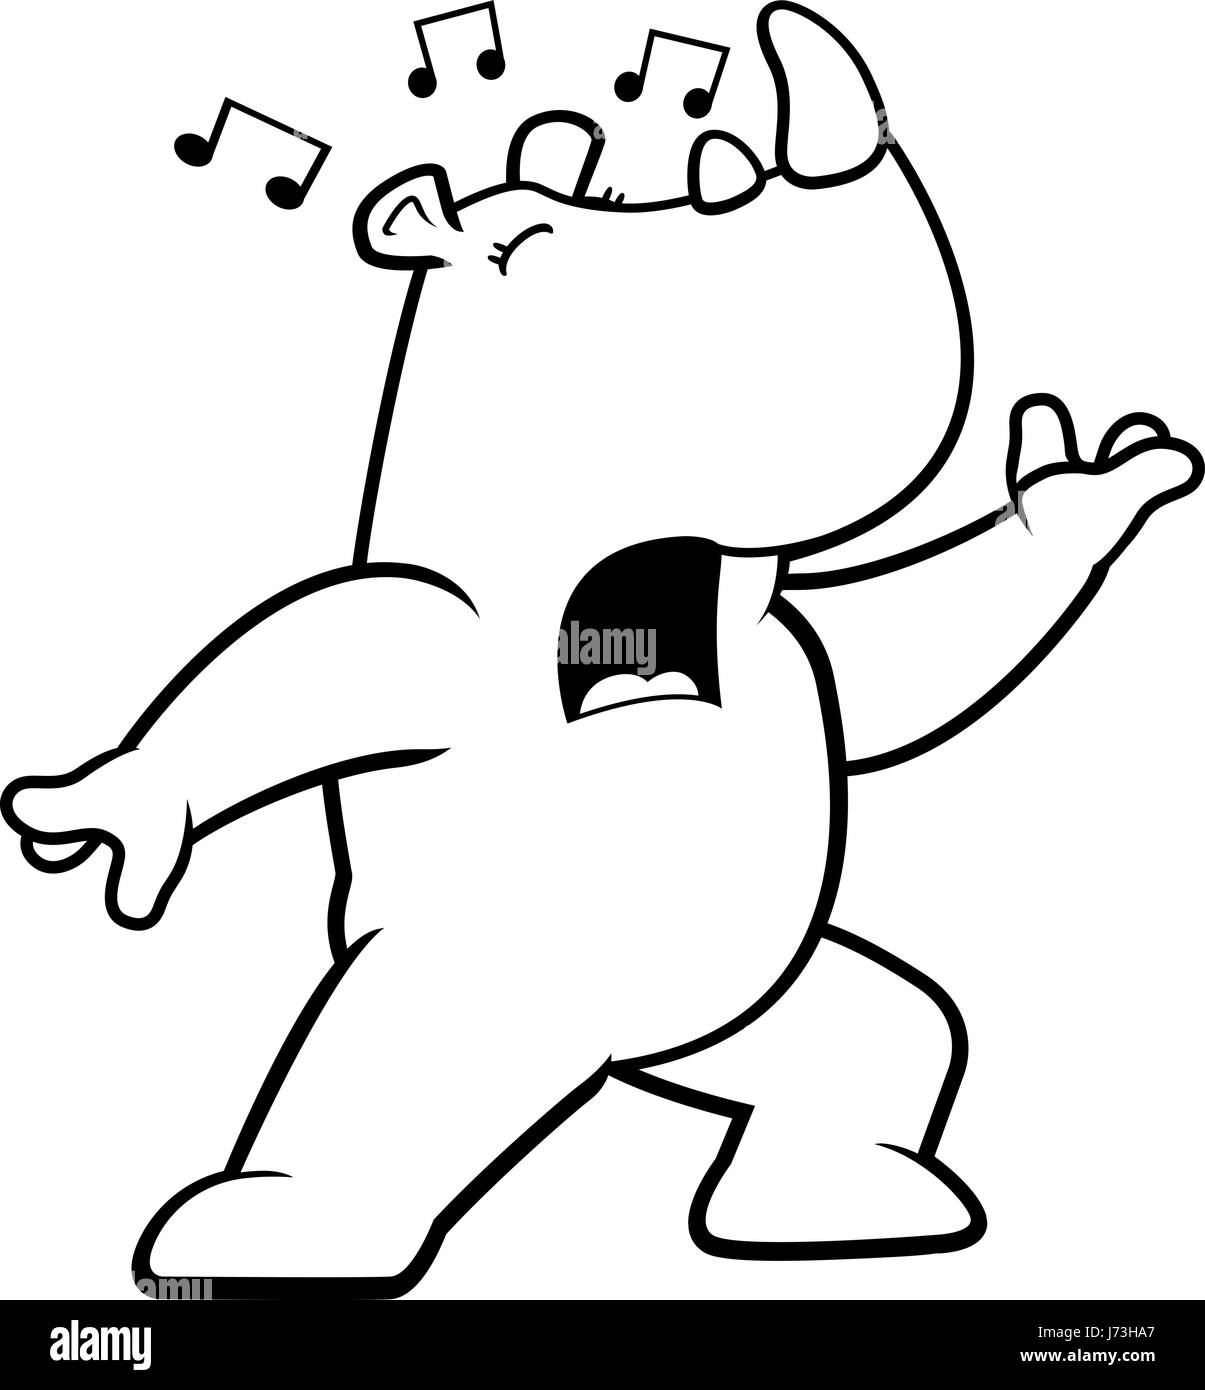 Una caricatura de Rhino y permanente cantando una canción. Ilustración del Vector